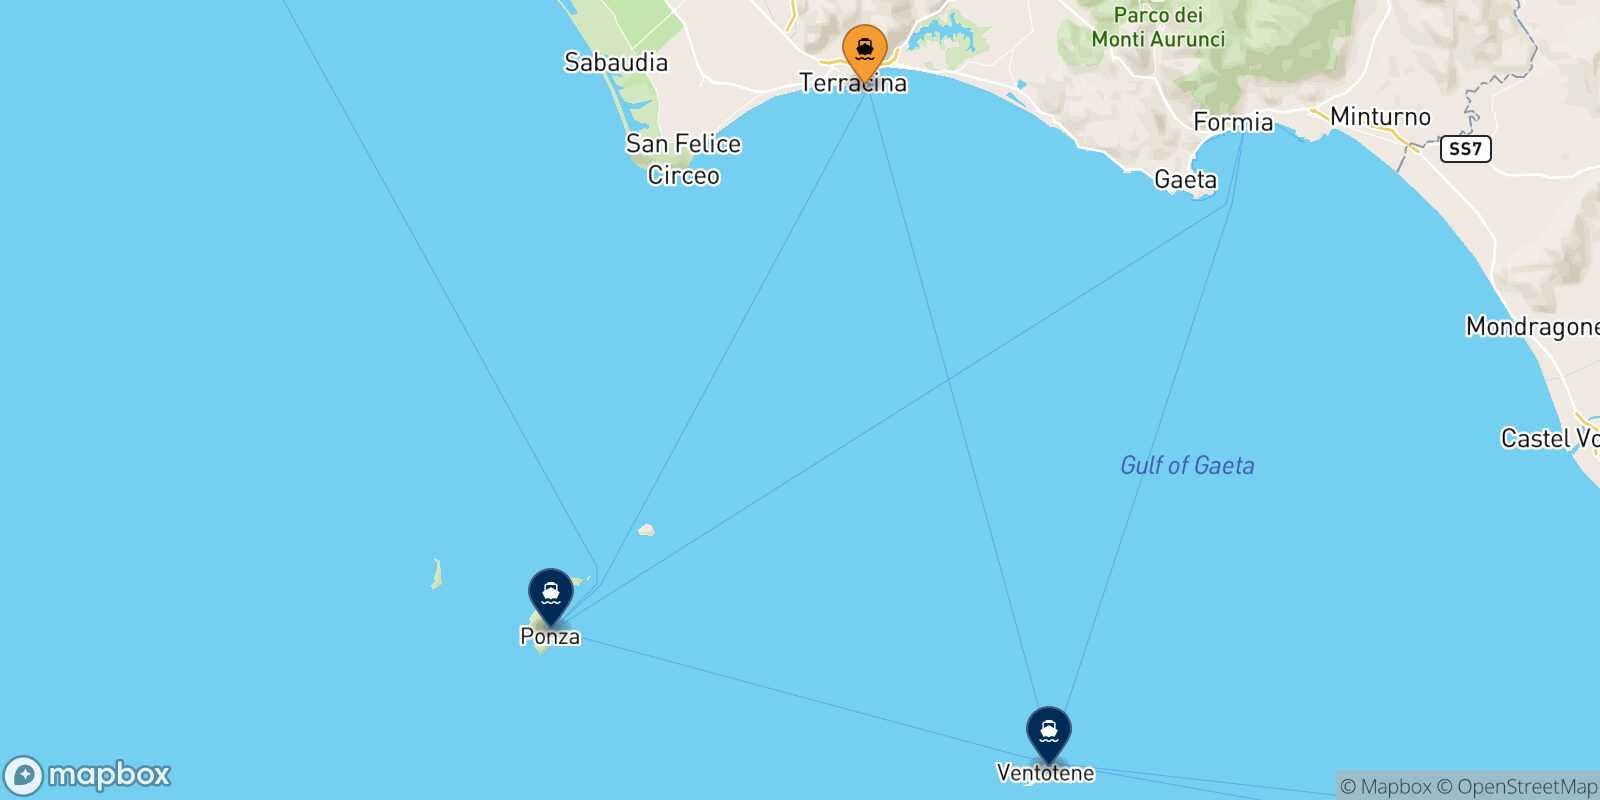 Mappa delle destinazioni raggiungibili da Terracina